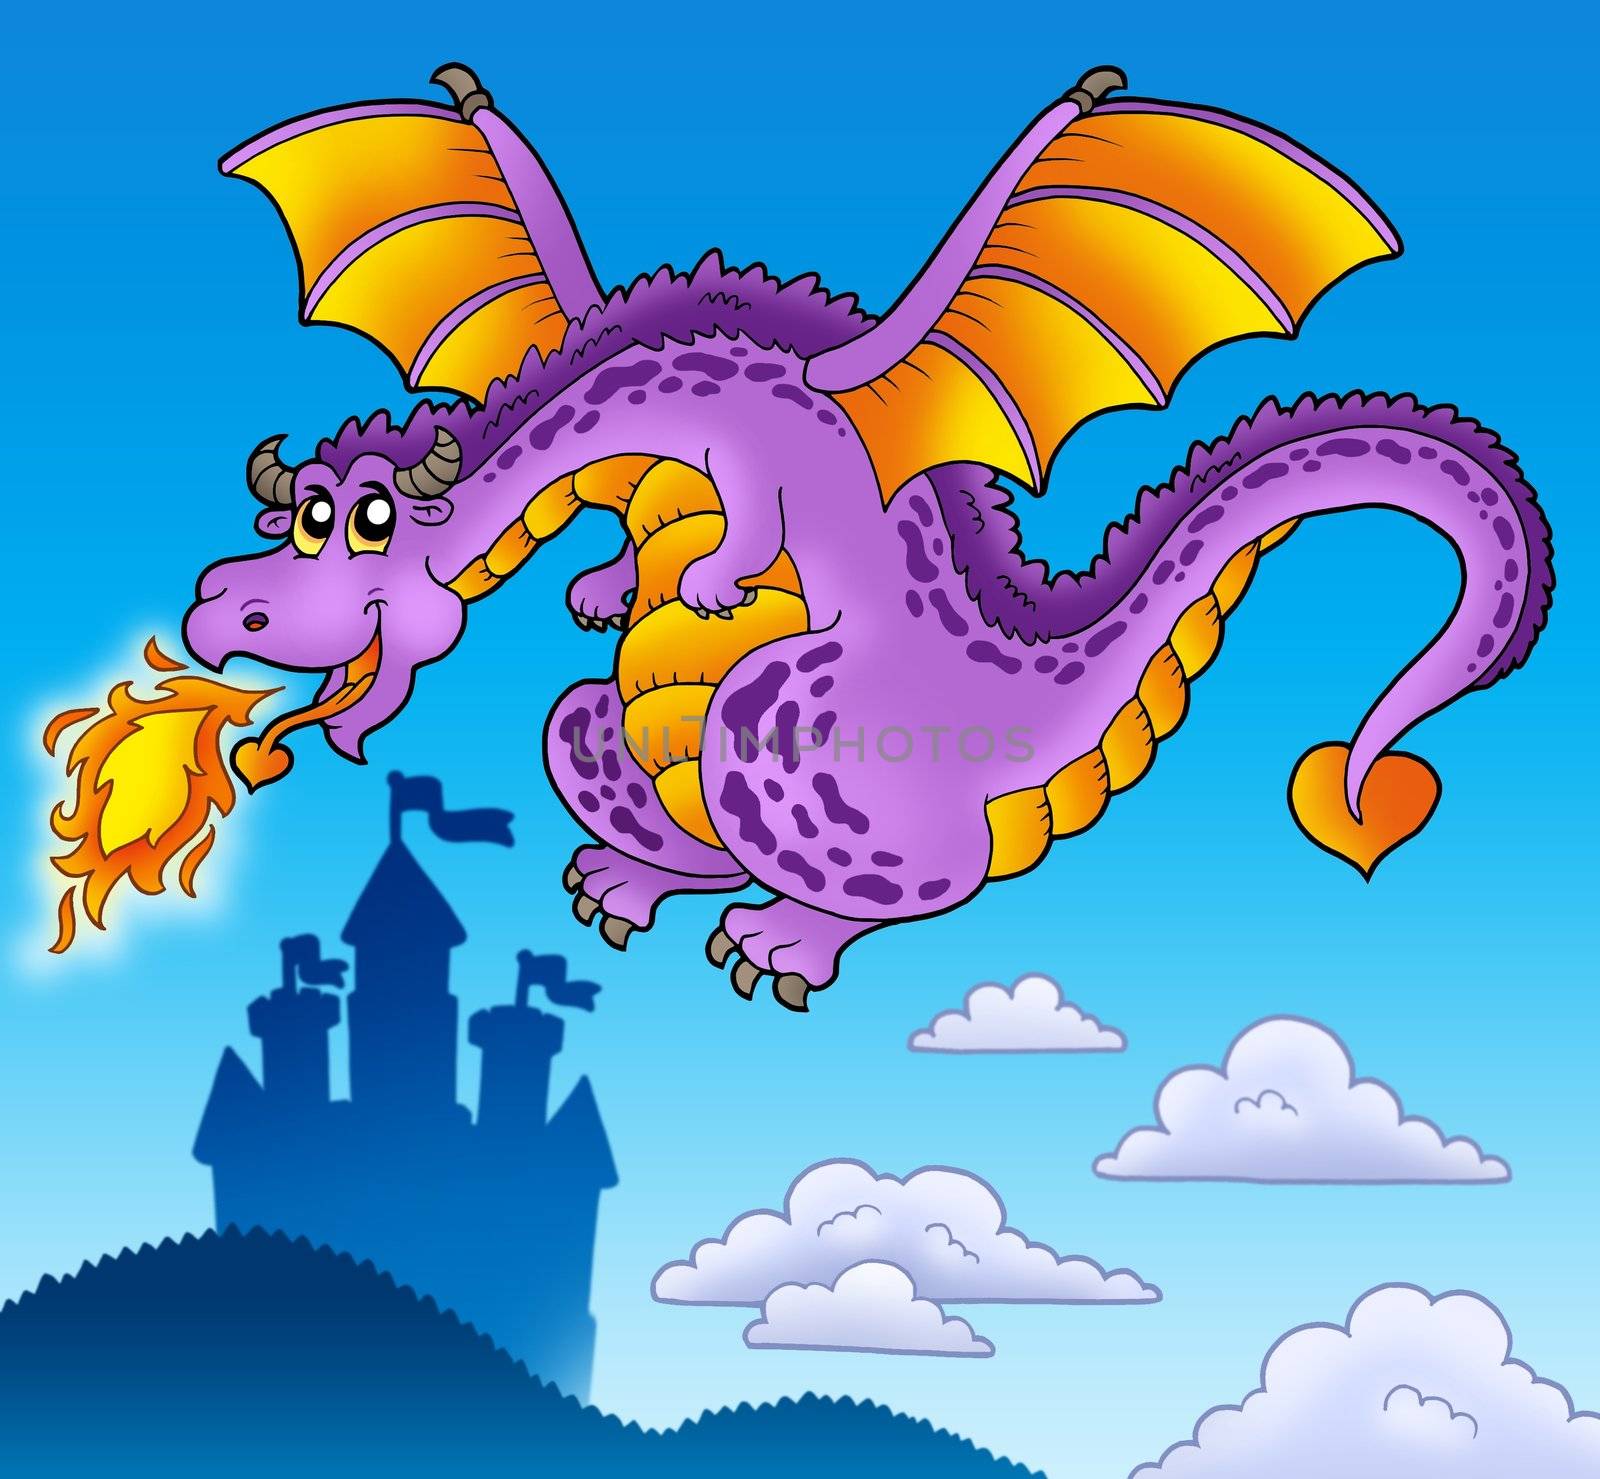 Huge flying dragon near castle - color illustration.